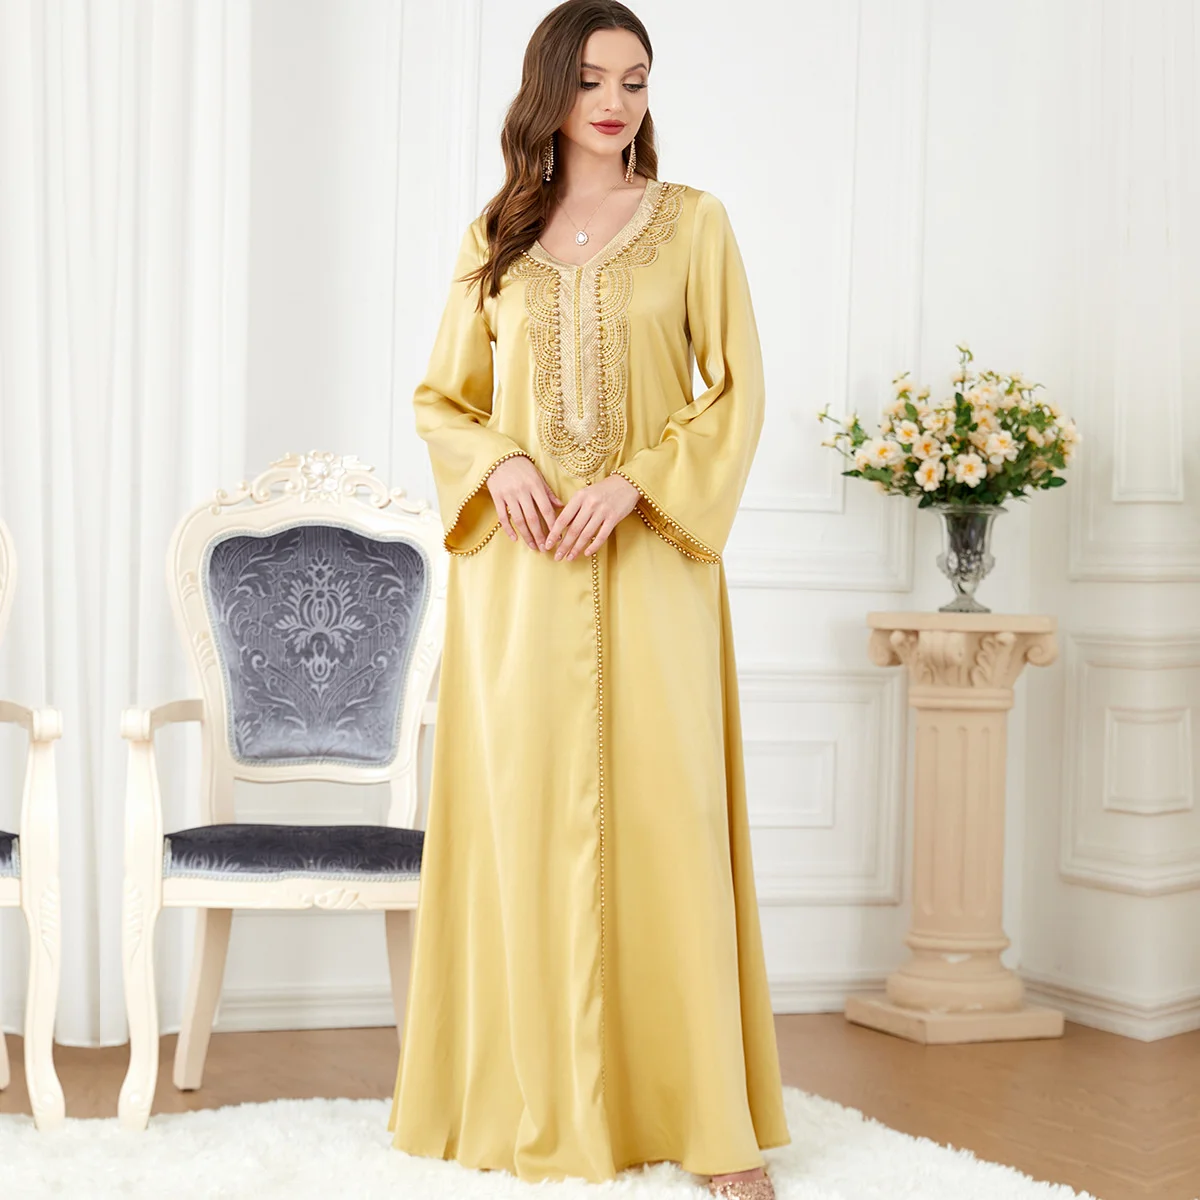 Мусульманская Абайя, арабские платья Макси с V-образным вырезом, расшитые бисером, с длинным рукавом, Модный Марокканский кафтан, Атласное платье с запахом, Женская одежда из Дубая, Турции